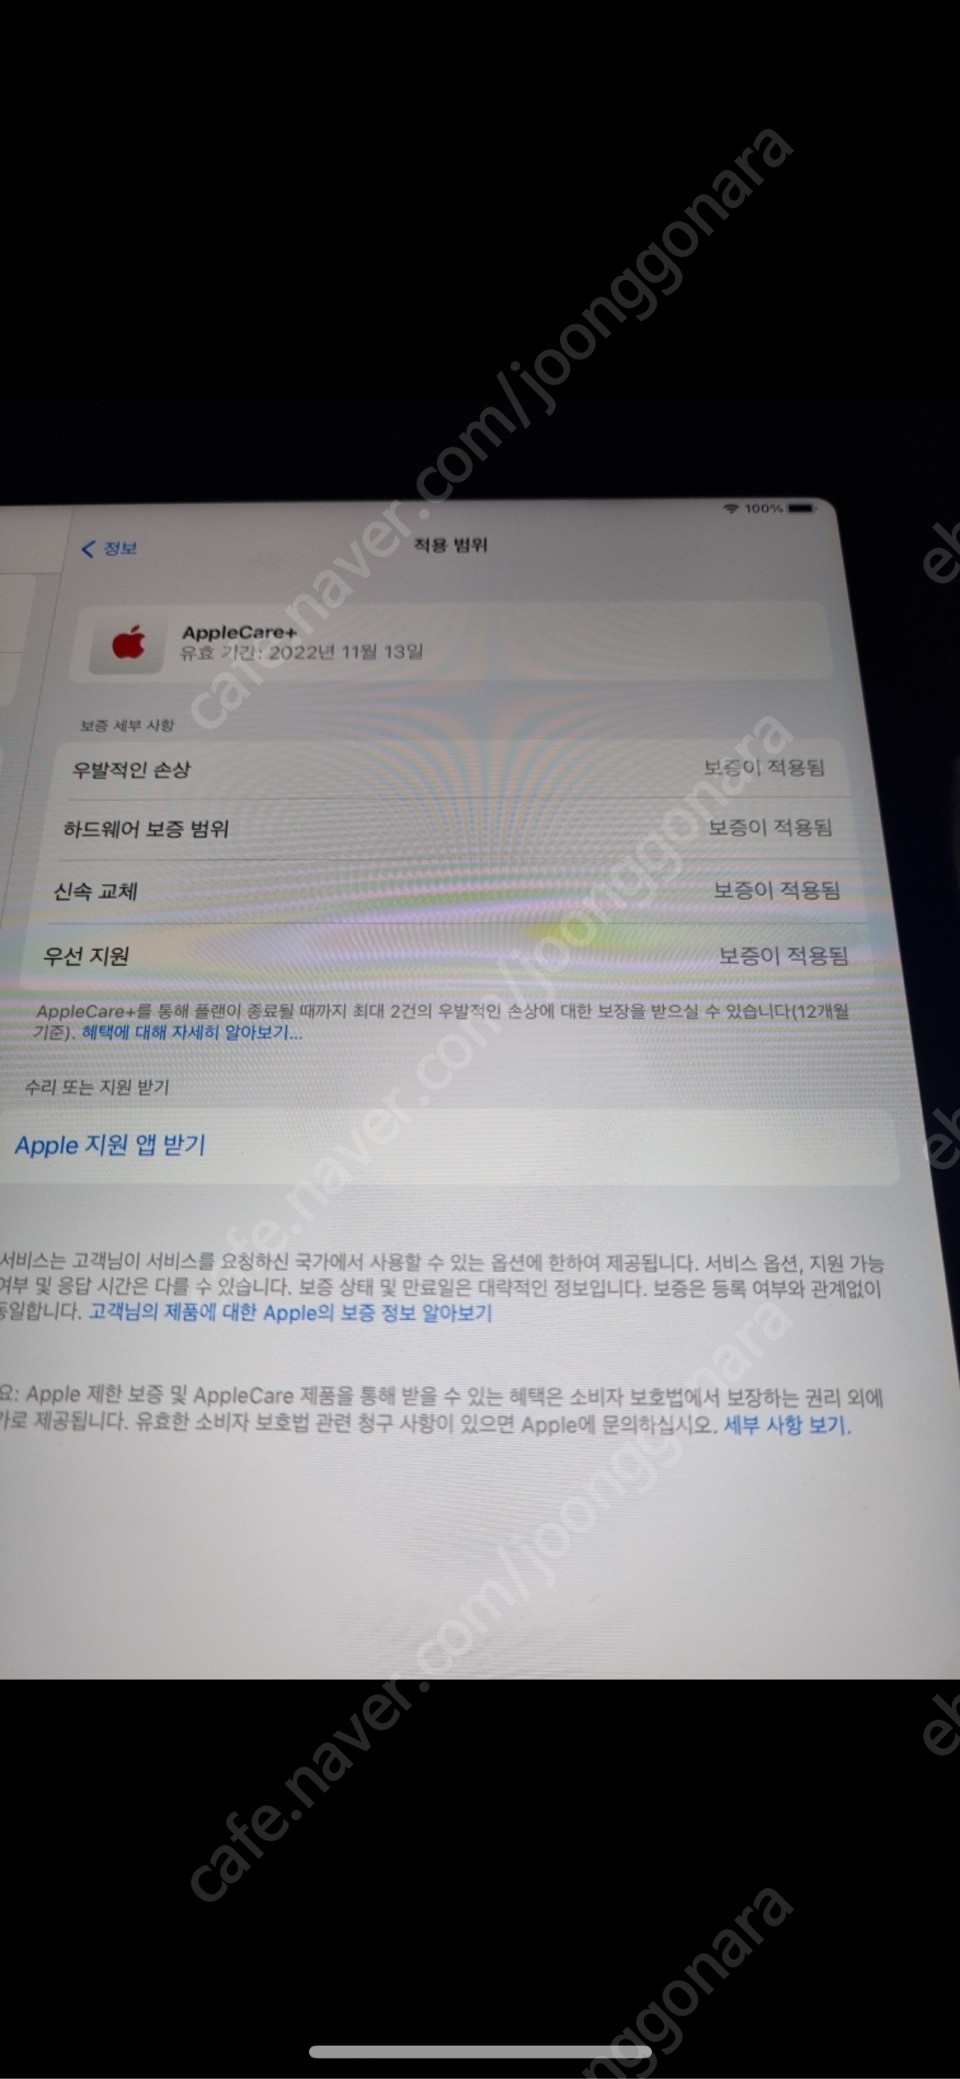 아이패드 프로4세대 12.9 256gb wifi모델 스페이스그레이+정품케이스+애플펜슬2세대+애플케어플러스22월11일까지